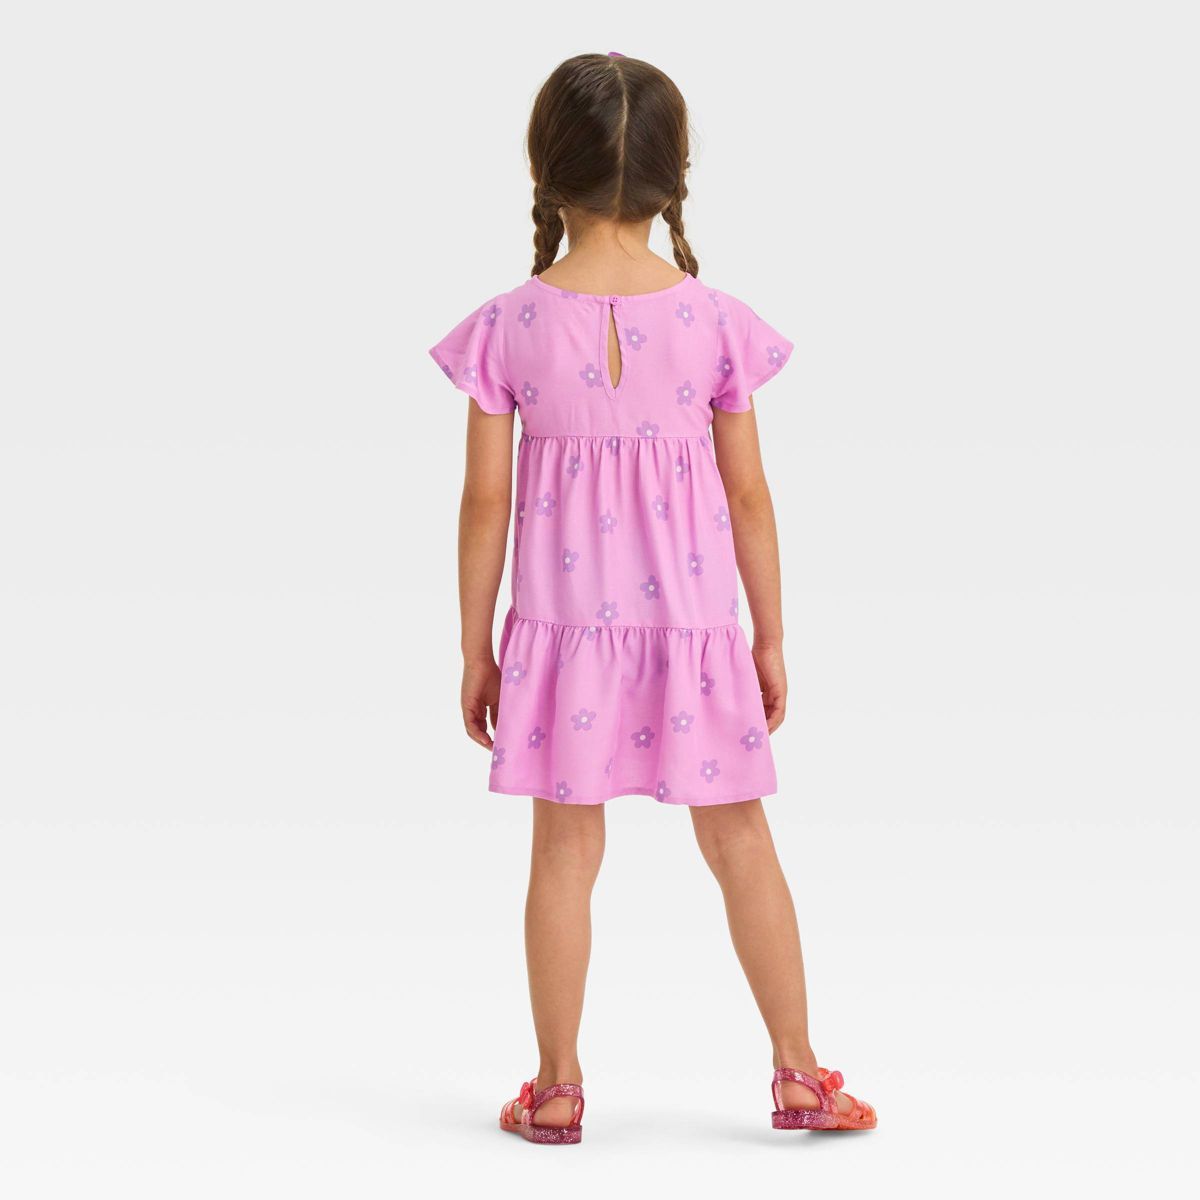 Toddler Girls' Floral Dress - Cat & Jack™ Lavender | Target